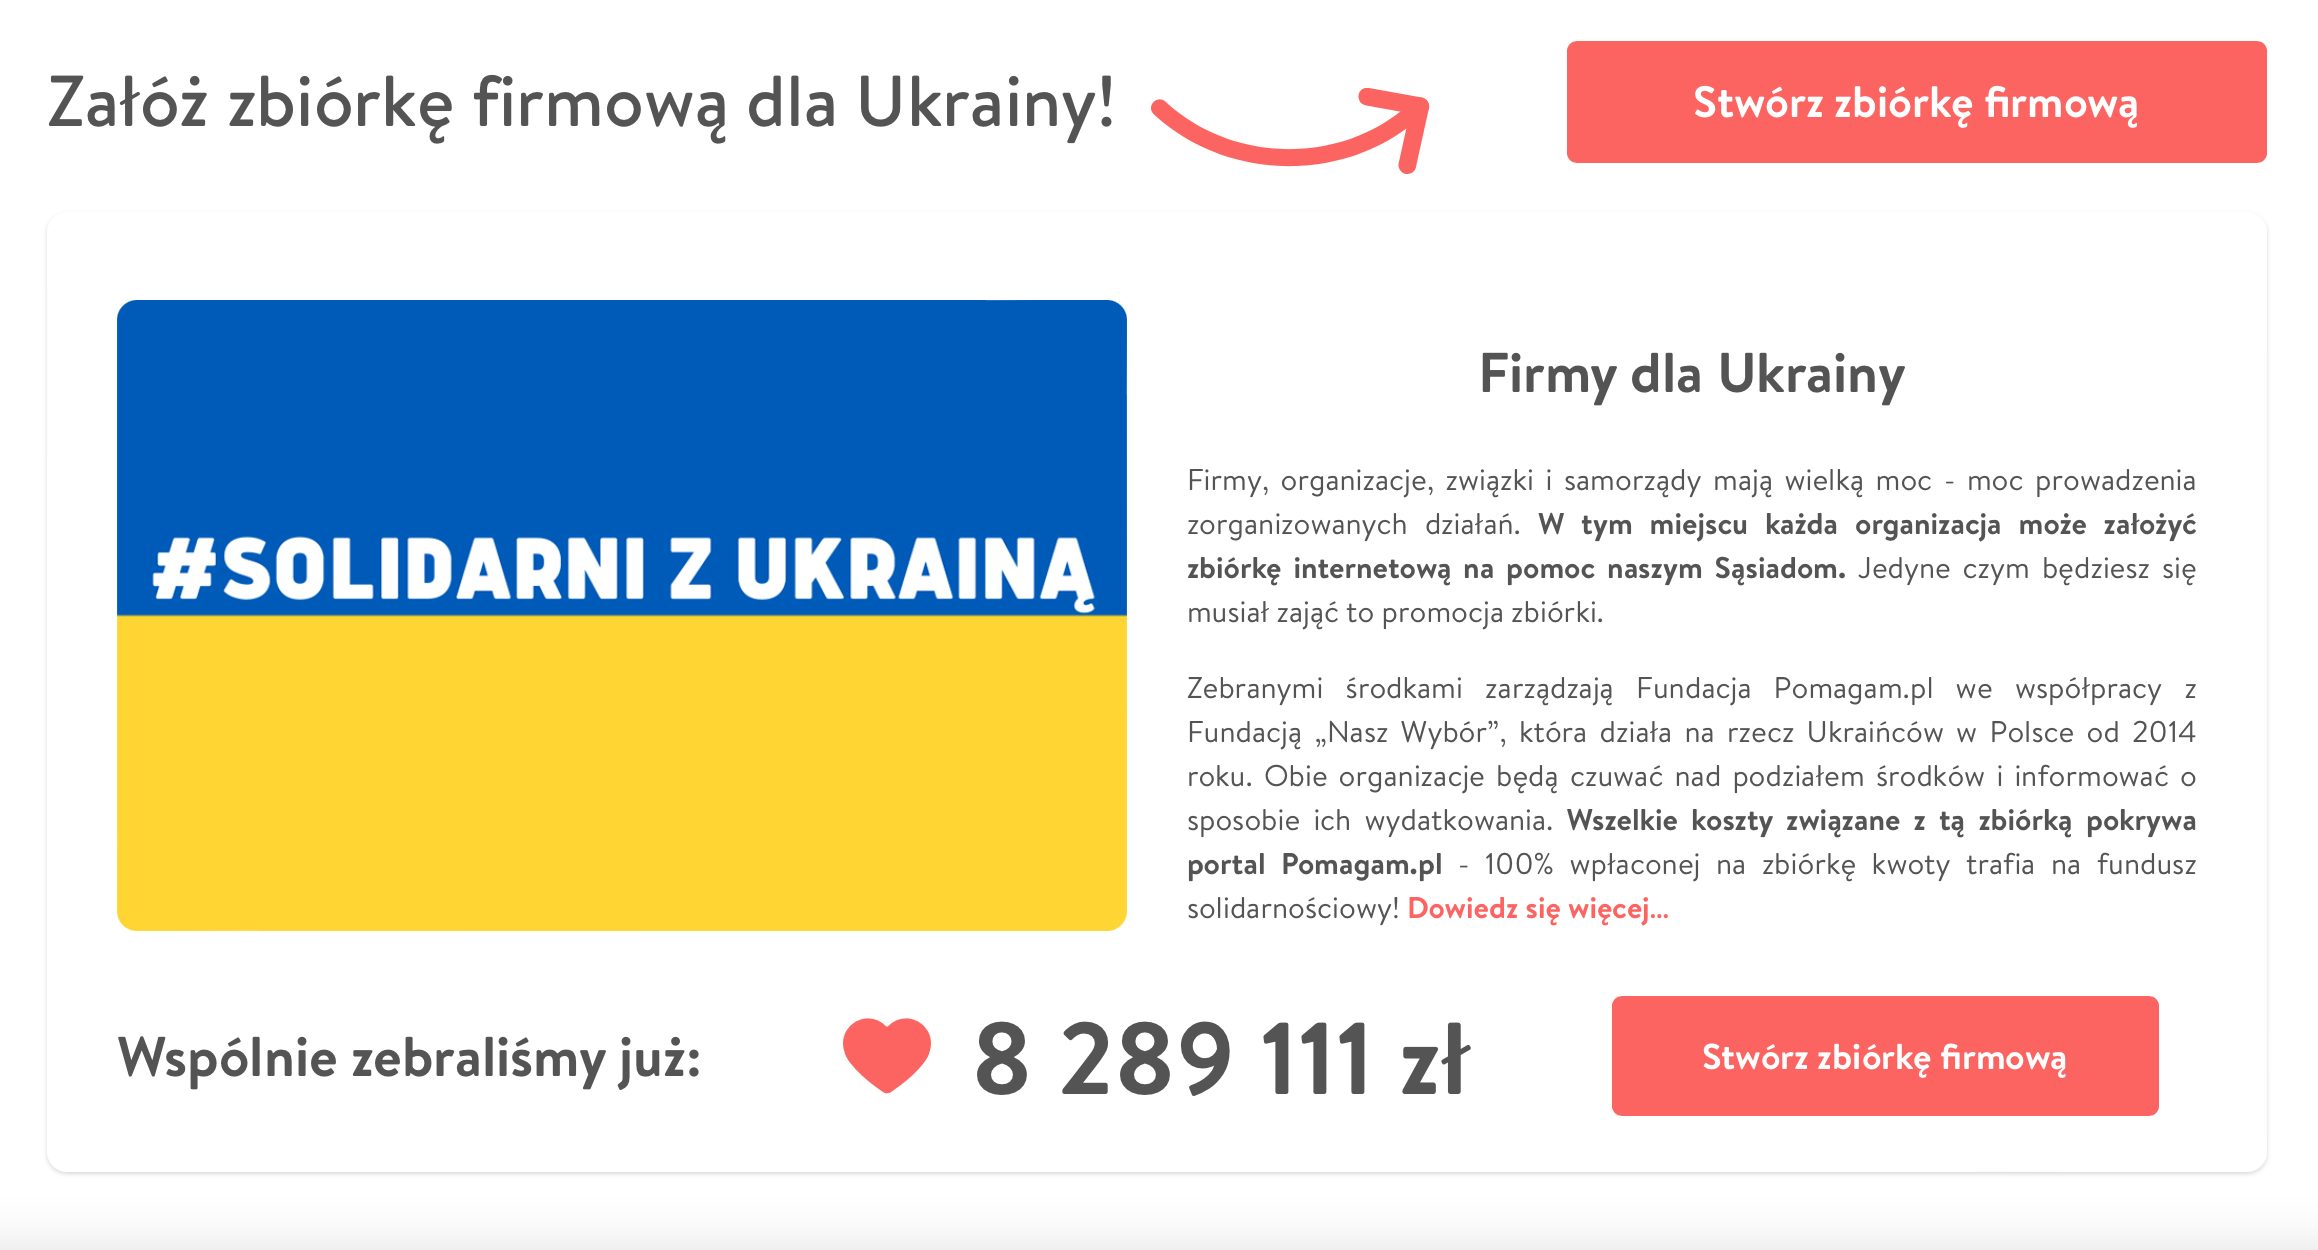 Branża IT dołącza do zbiórki Solidarni z Ukrainą: Just Join IT wpłaciło 30 tysięcy złotych!